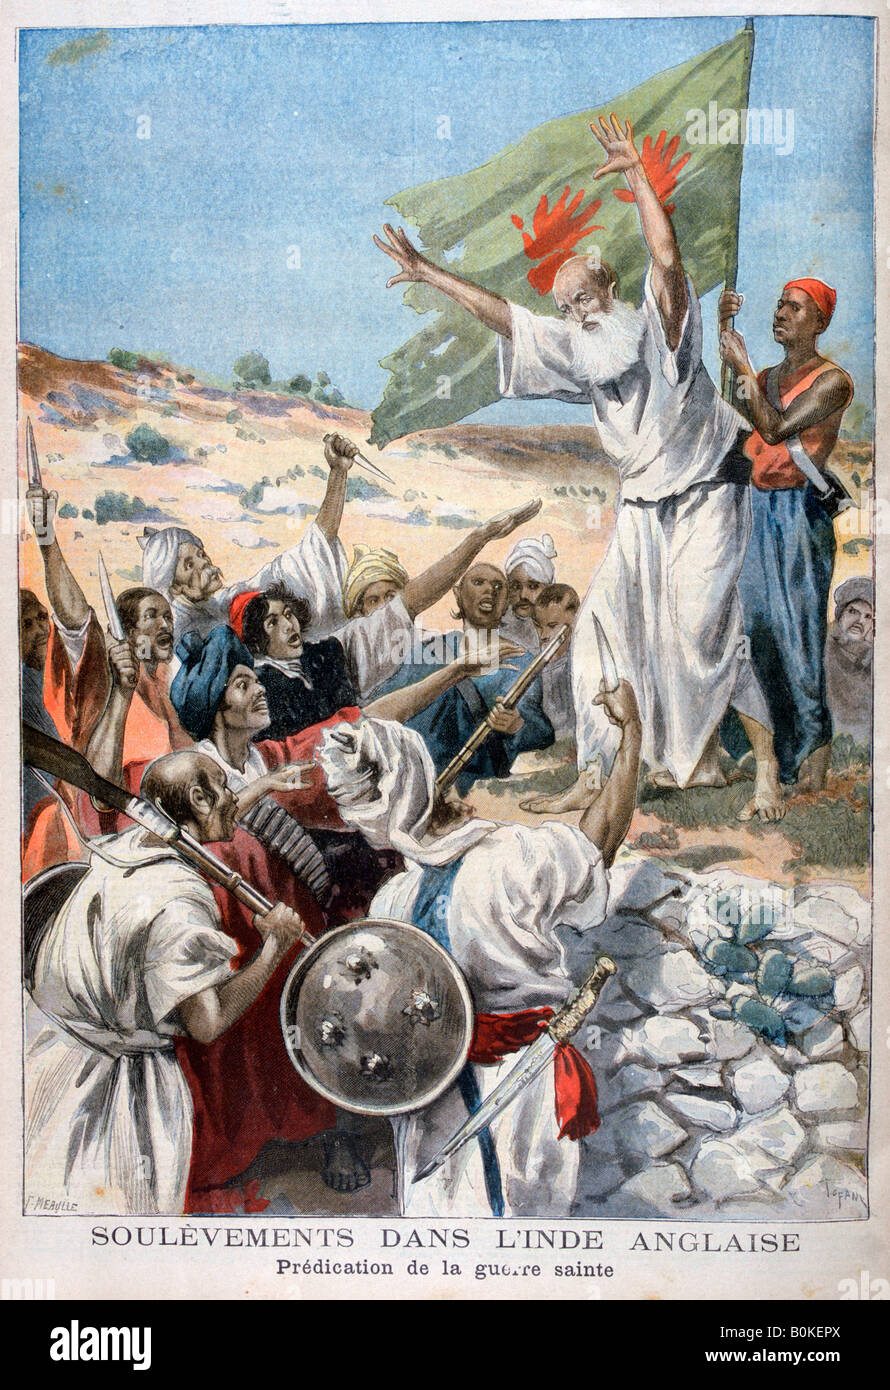 La prédication de "guerre sainte" au cours d'un soulèvement dans l'Inde britannique, 1897. Artiste : F Meaulle Banque D'Images